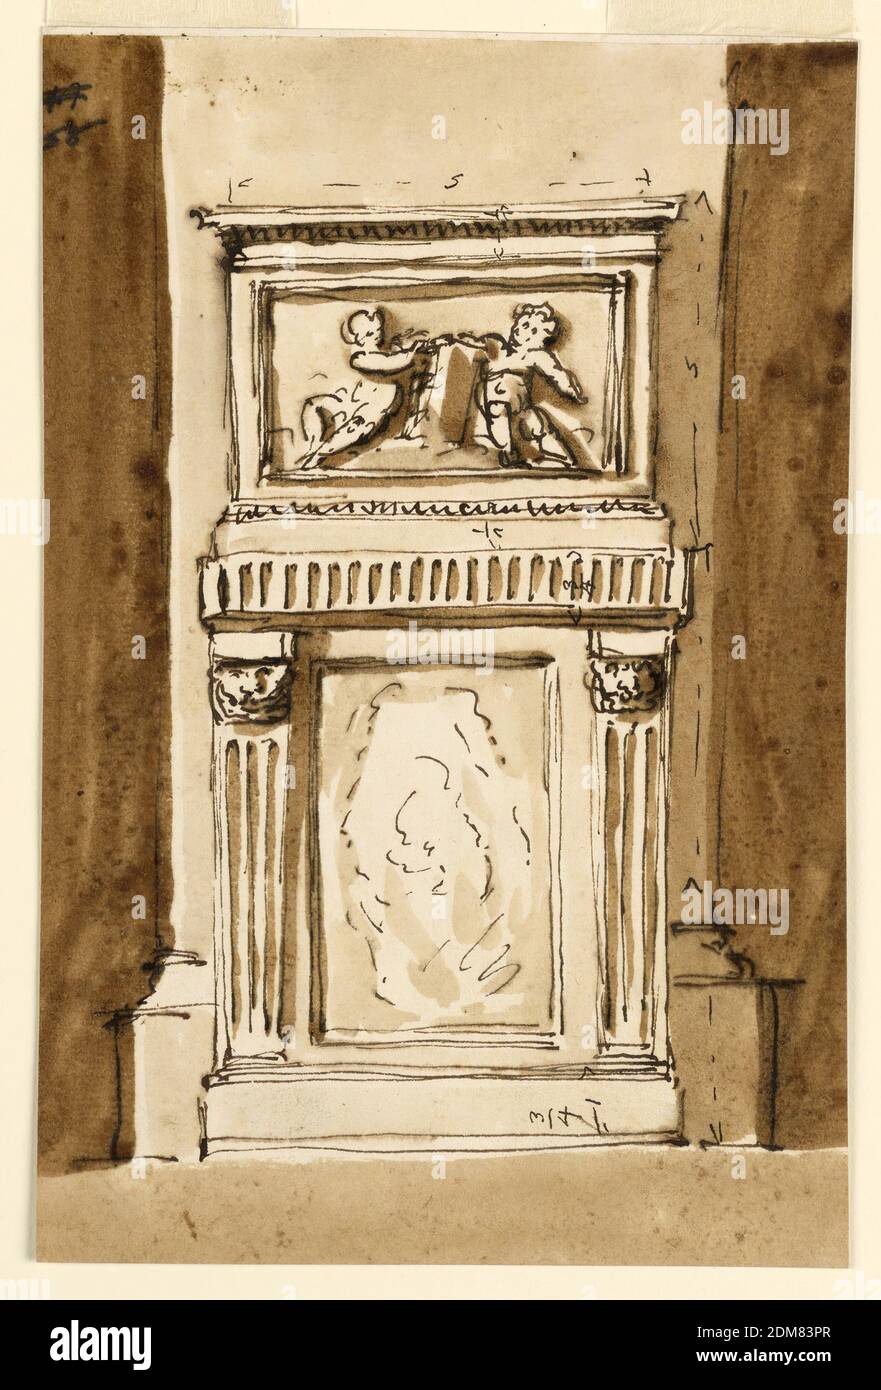 Entwurf für den Sockel und Sockel einer Säule in einer Kirche, Giuseppe Barberi, italienisch, 1746–1809, Feder und braune Tinte, Pinsel und braune Wäsche auf weißem Papier, gefüttert, der untere Sockel ist hoch rechteckig mit einem niedrigen Sockel, dessen Höhe als "3/4" angegeben ist; Das gilt auch für den geriffelten Fries. Seitlich sind gerillte Säulen mit Masken statt Kapitellen. Für die Innenseite der gerahmten Platte scheint eine Füllung mit Marmor vorgesehen zu sein. Der obere Sockel ist breit rechteckig. In seiner Tafel sind zwei sitzende Putti mit einem Buch. Die Höhe seines Sockels und seiner Entablatur wird als '5' angegeben. Stockfoto